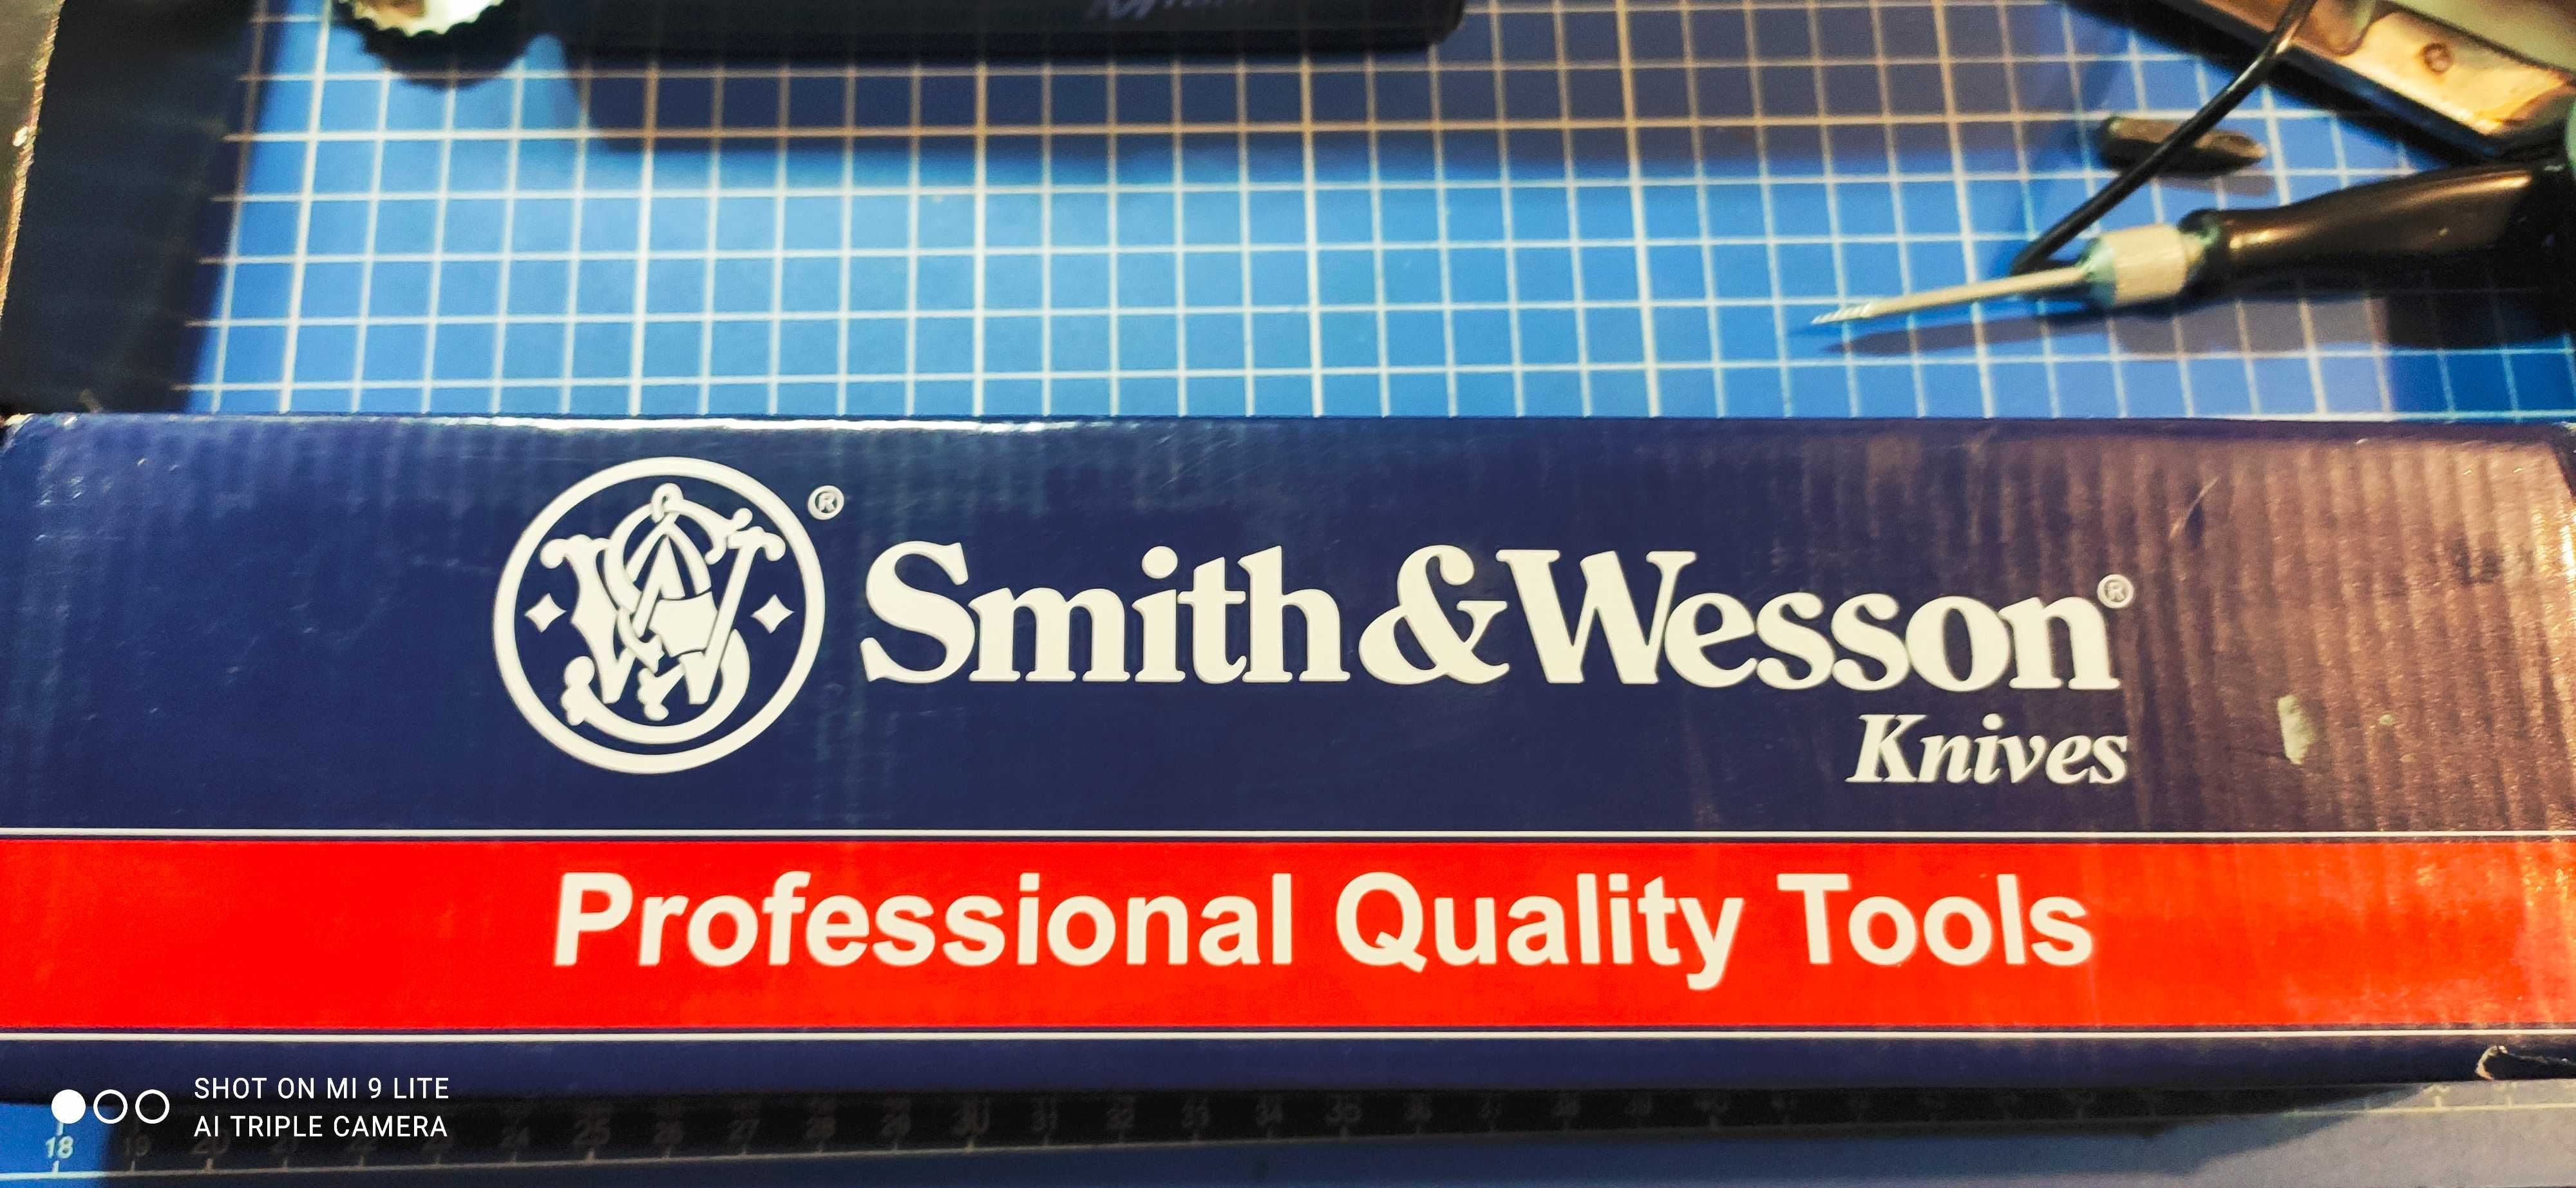 NOż Smith&Wsson sprzedam badz zamienie